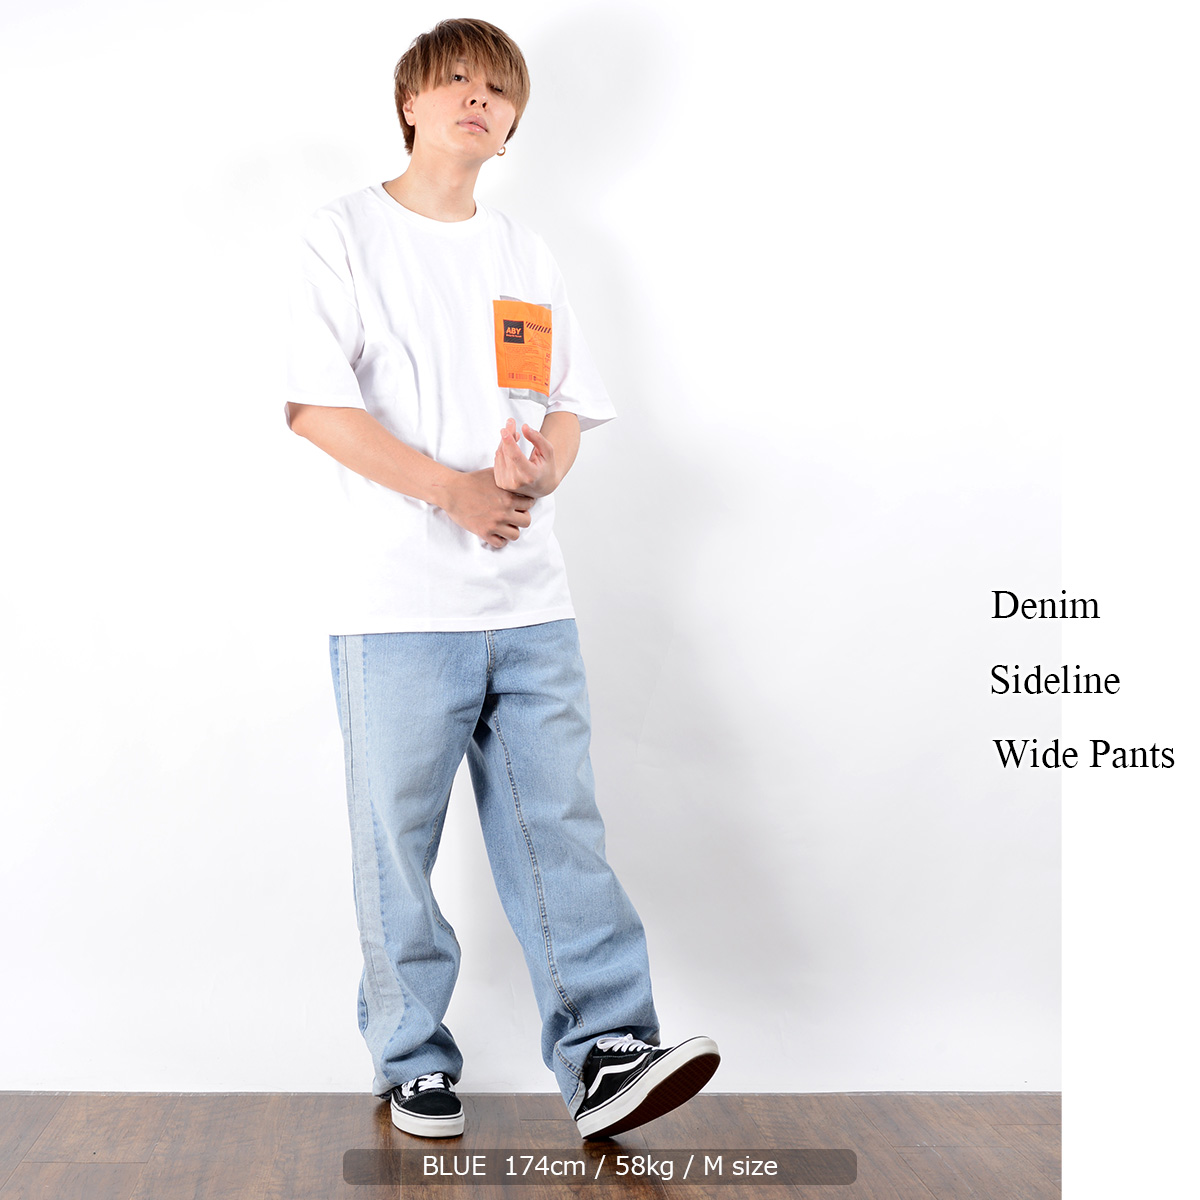 ズボン パンツ かわいい ボトムス ボトム メンズ ジーンズ メンズ ラインパンツ メンズ デニムワイドパンツ メンズ ワイドパンツ メンズ デニムパンツ メンズ パンツ ワイドパンツ サイドライン デニム 韓国 カジュアル ストリート系 人気 服 韓国